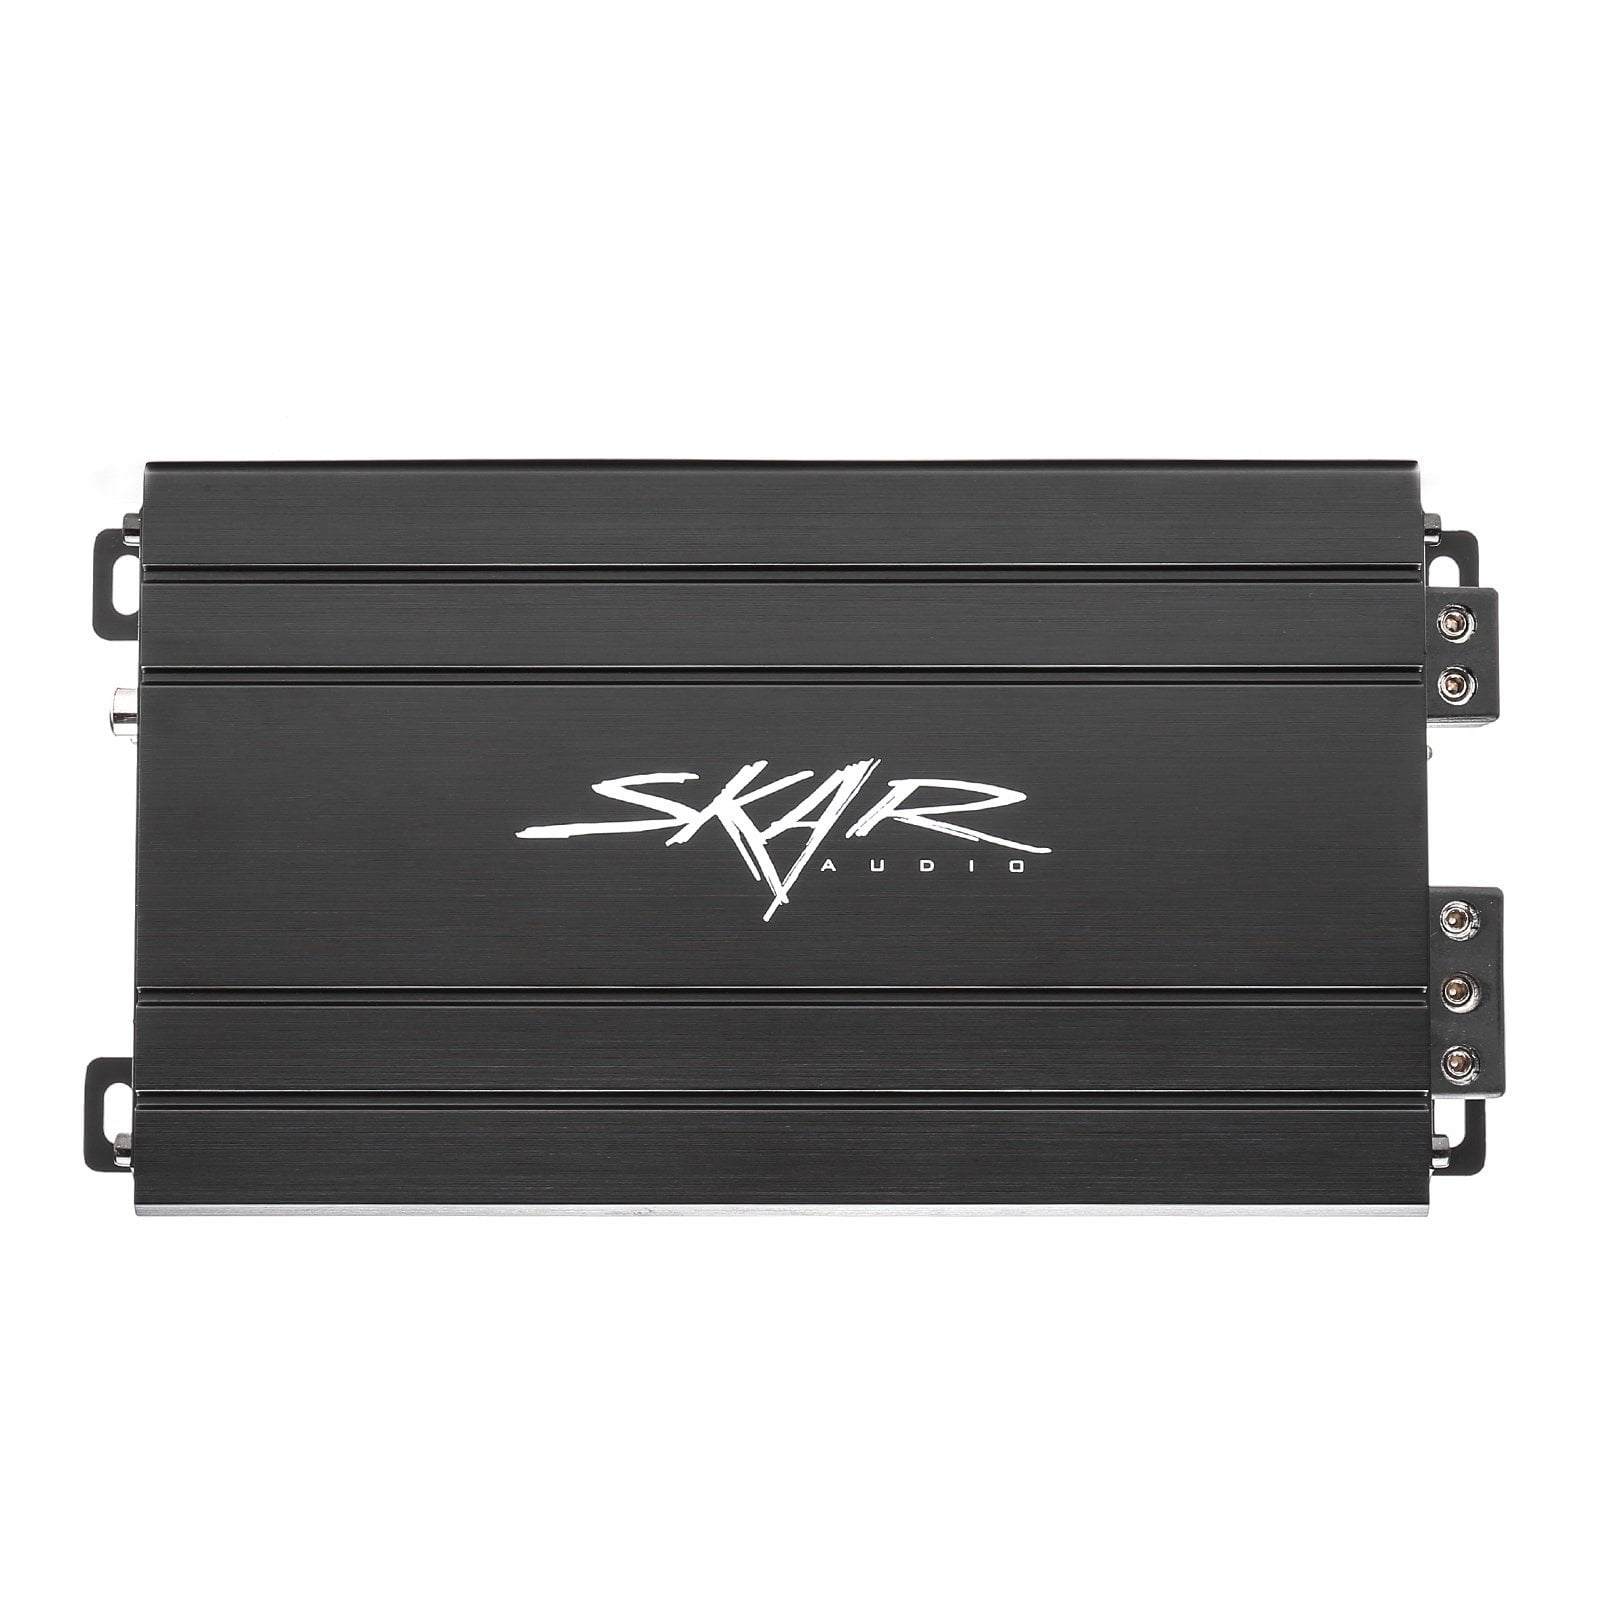 Skar Audio SK-M5001D 500 Watt Class D Monblock Car Amplifier - Front View